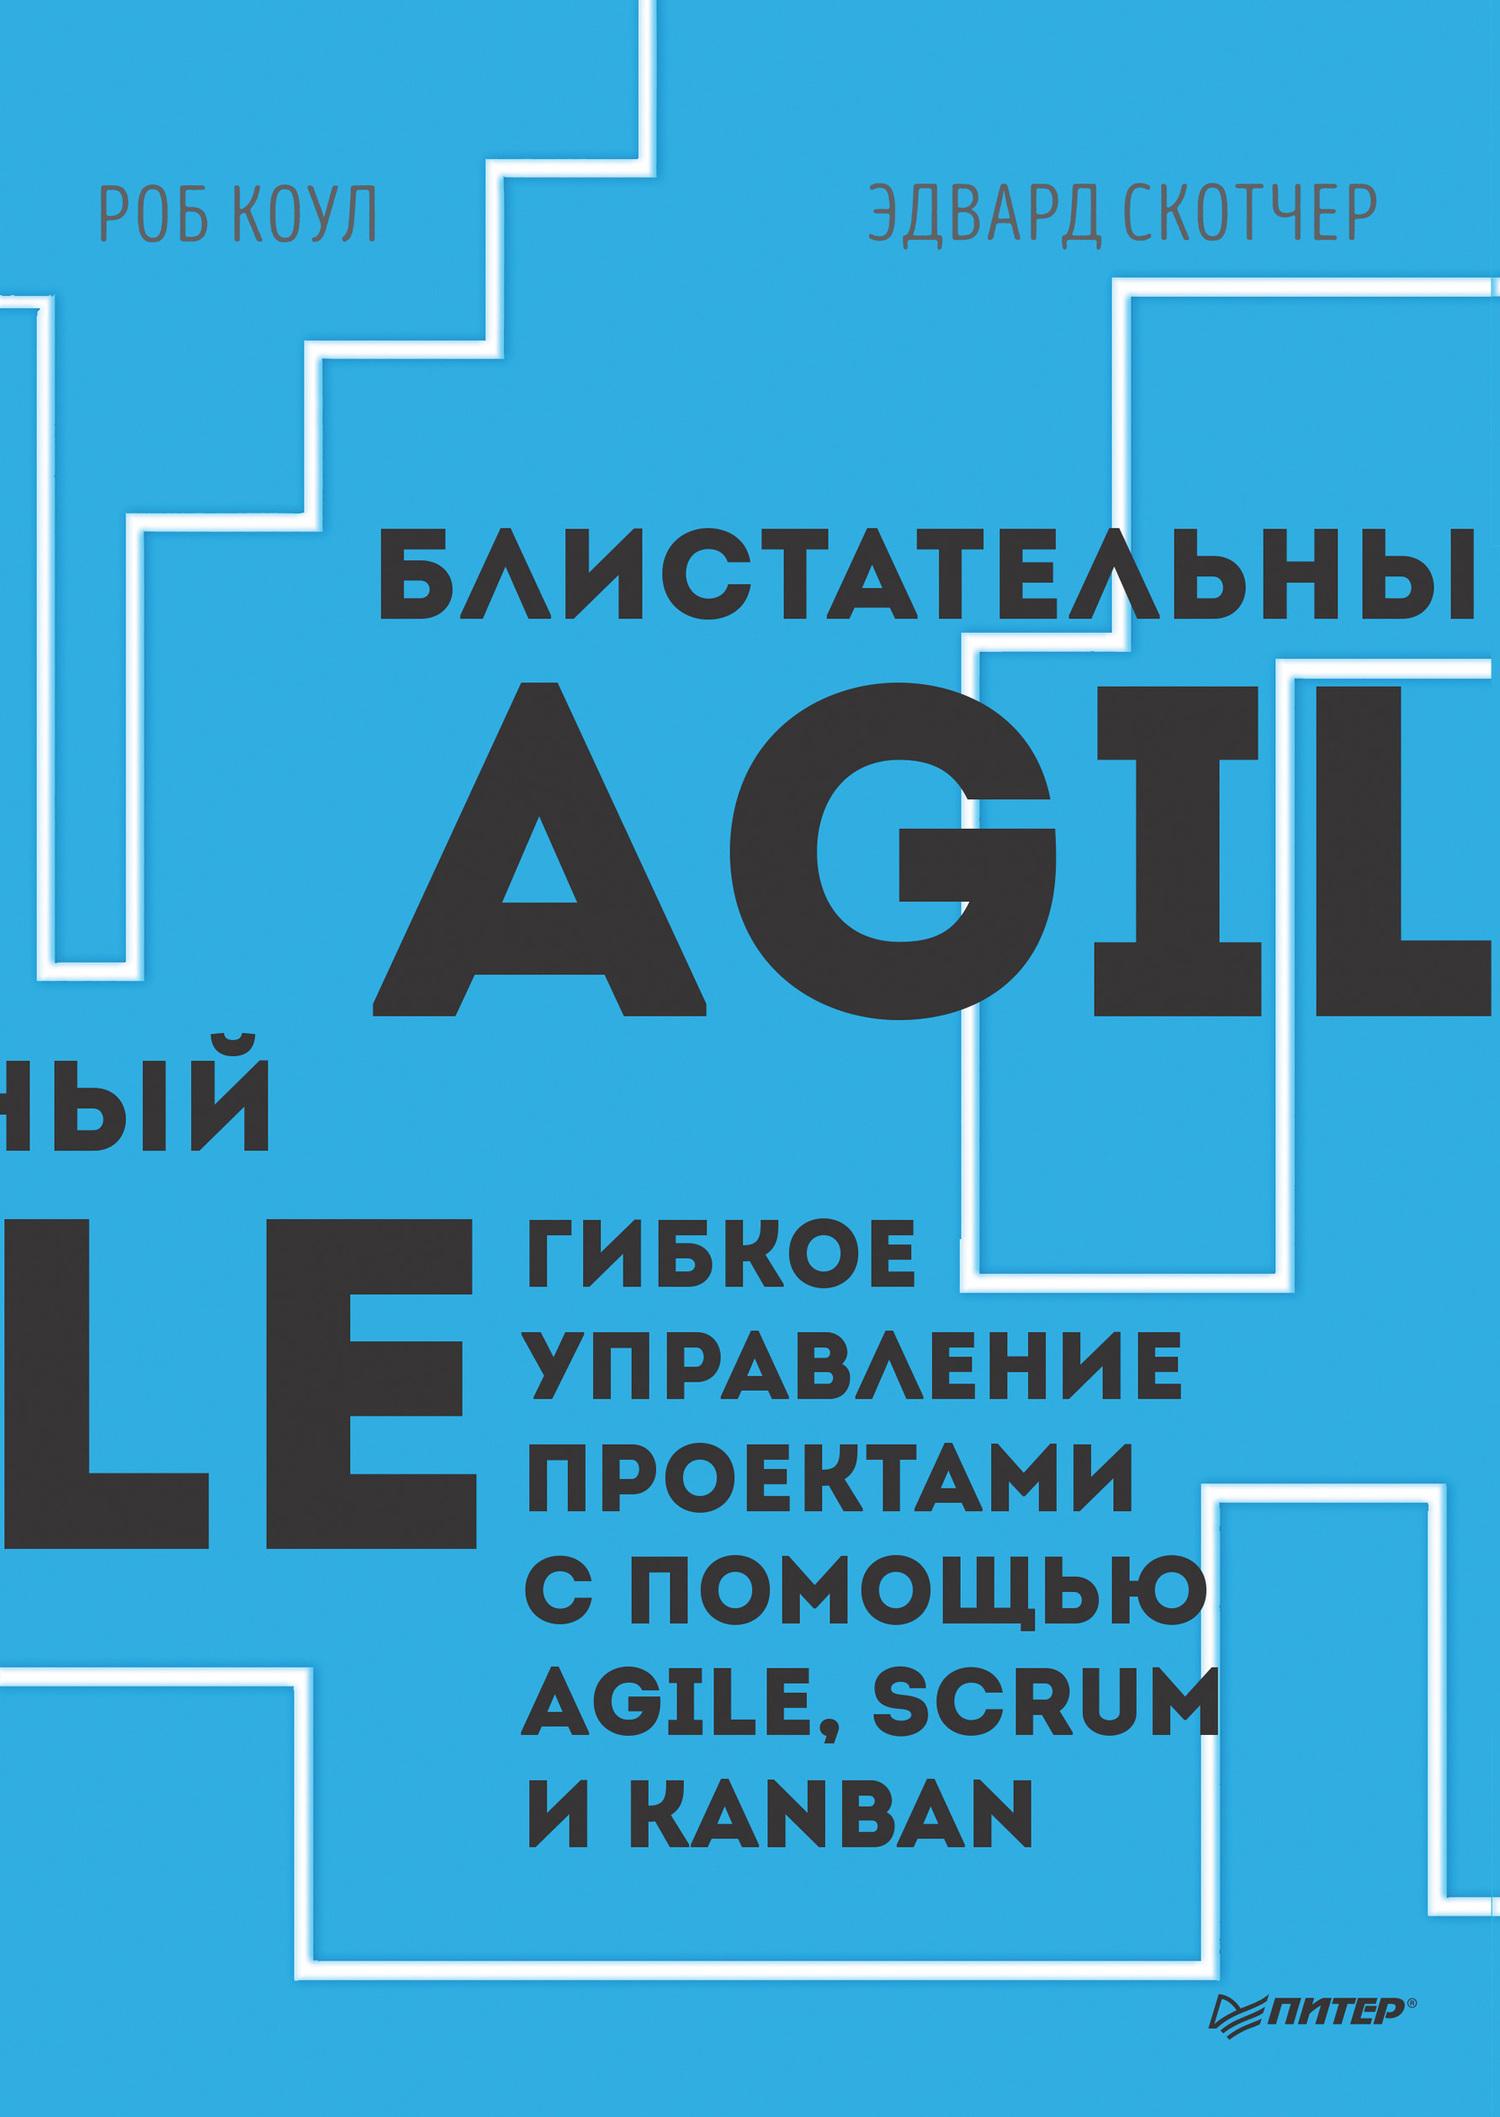 Коул Роб - Блистательный Agile. Гибкое управление проектами с помощью Agile, Scrum и Kanban скачать бесплатно